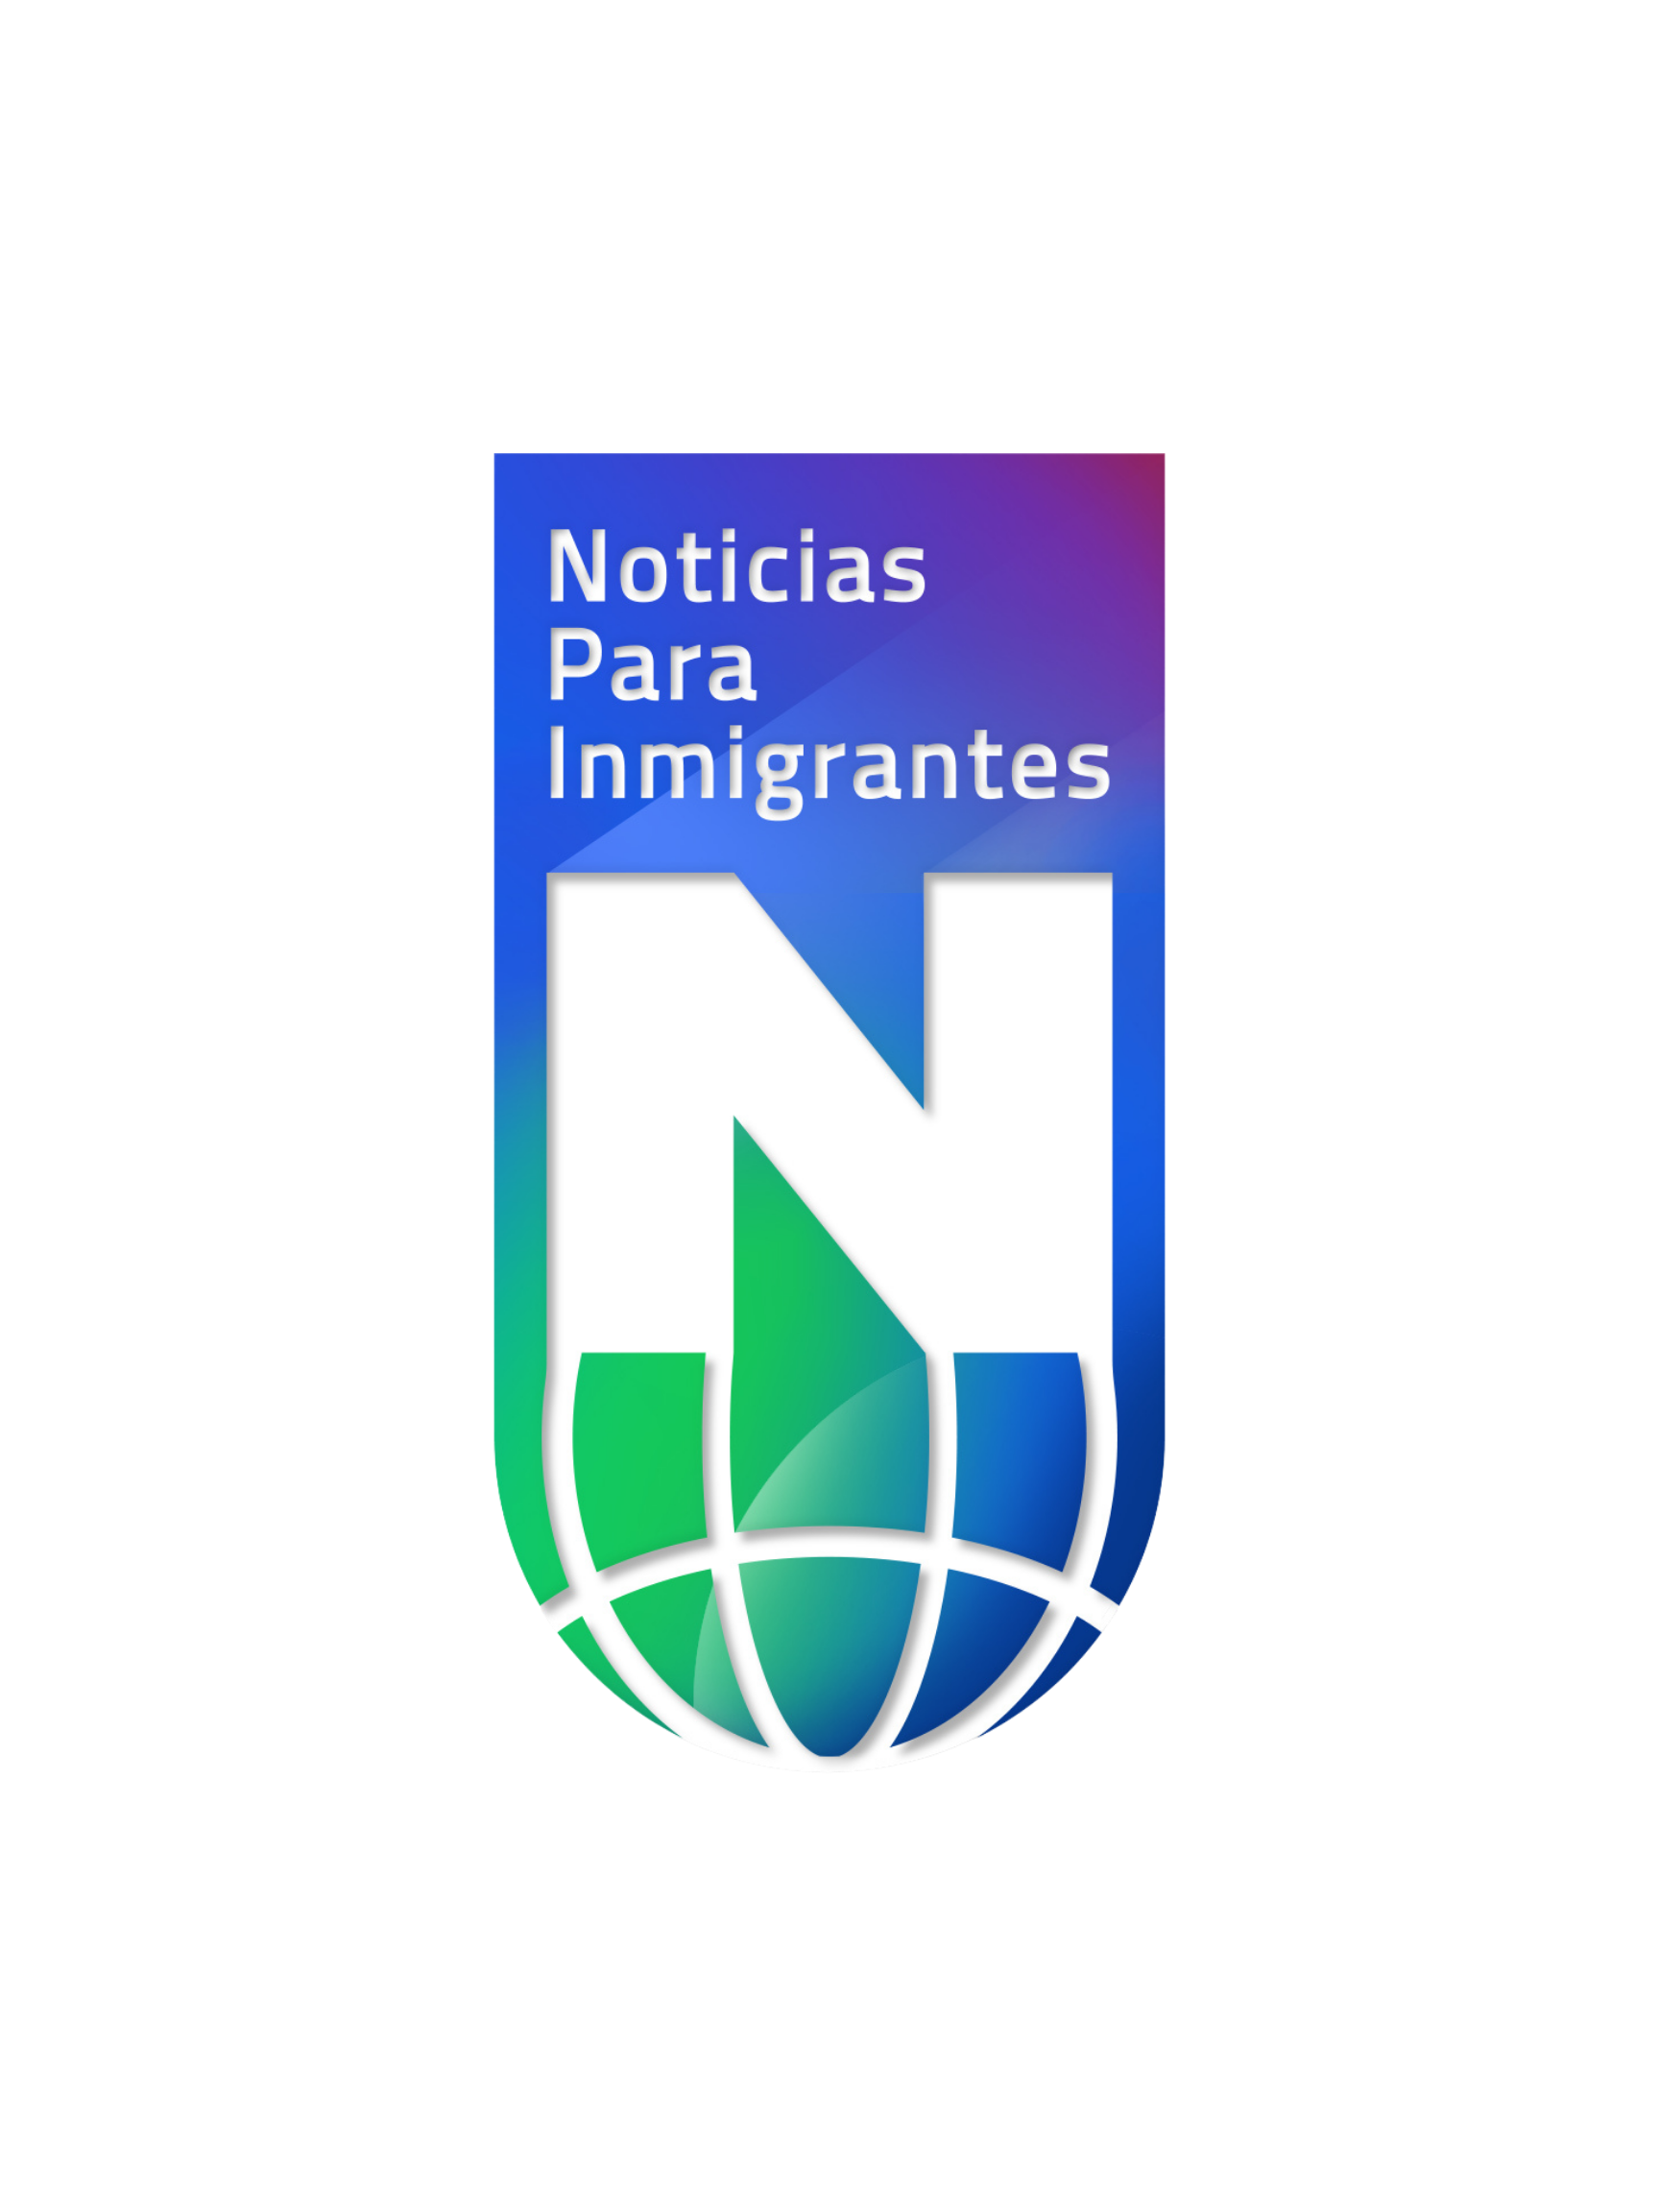 Noticias Para Inmigrantes logo